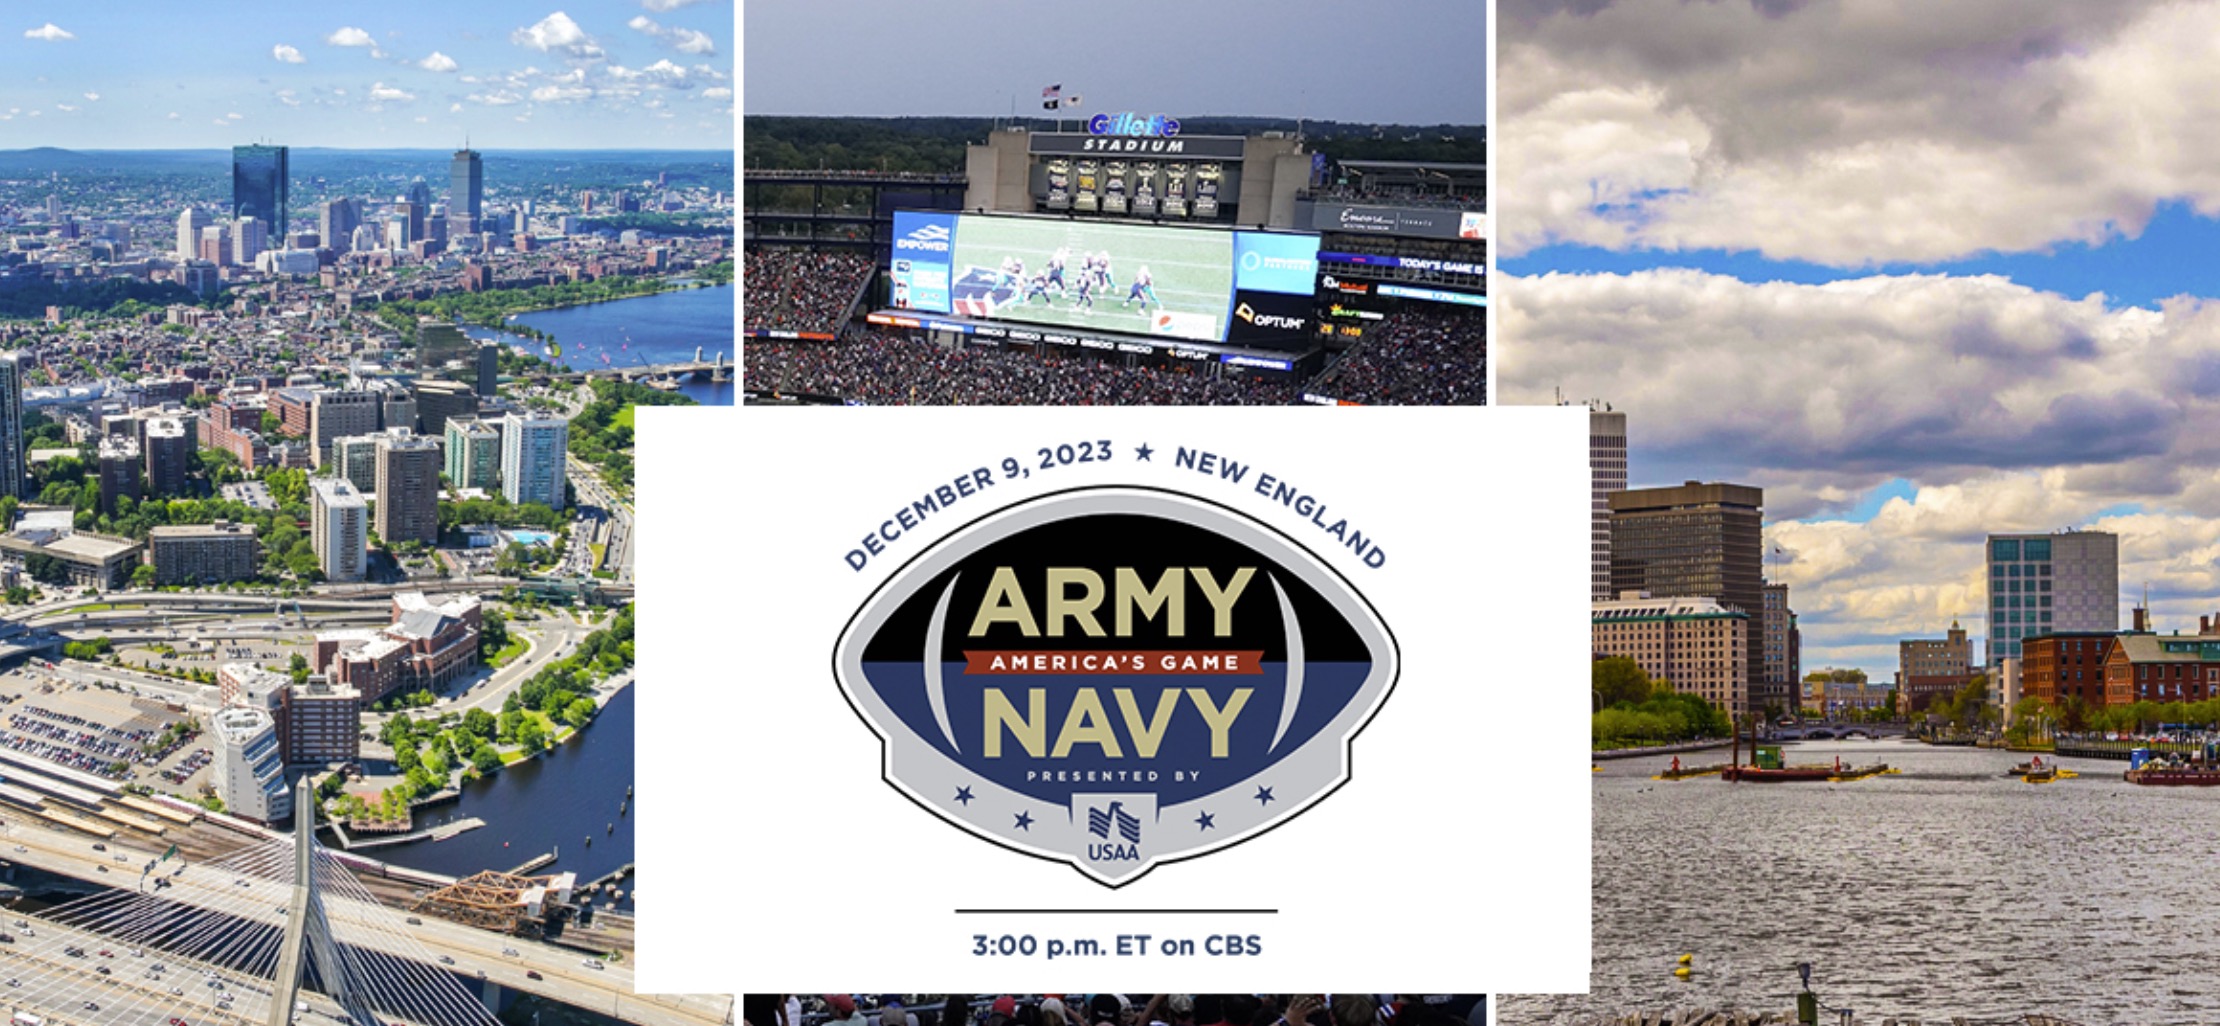 124th Meeting Army vs Navy!